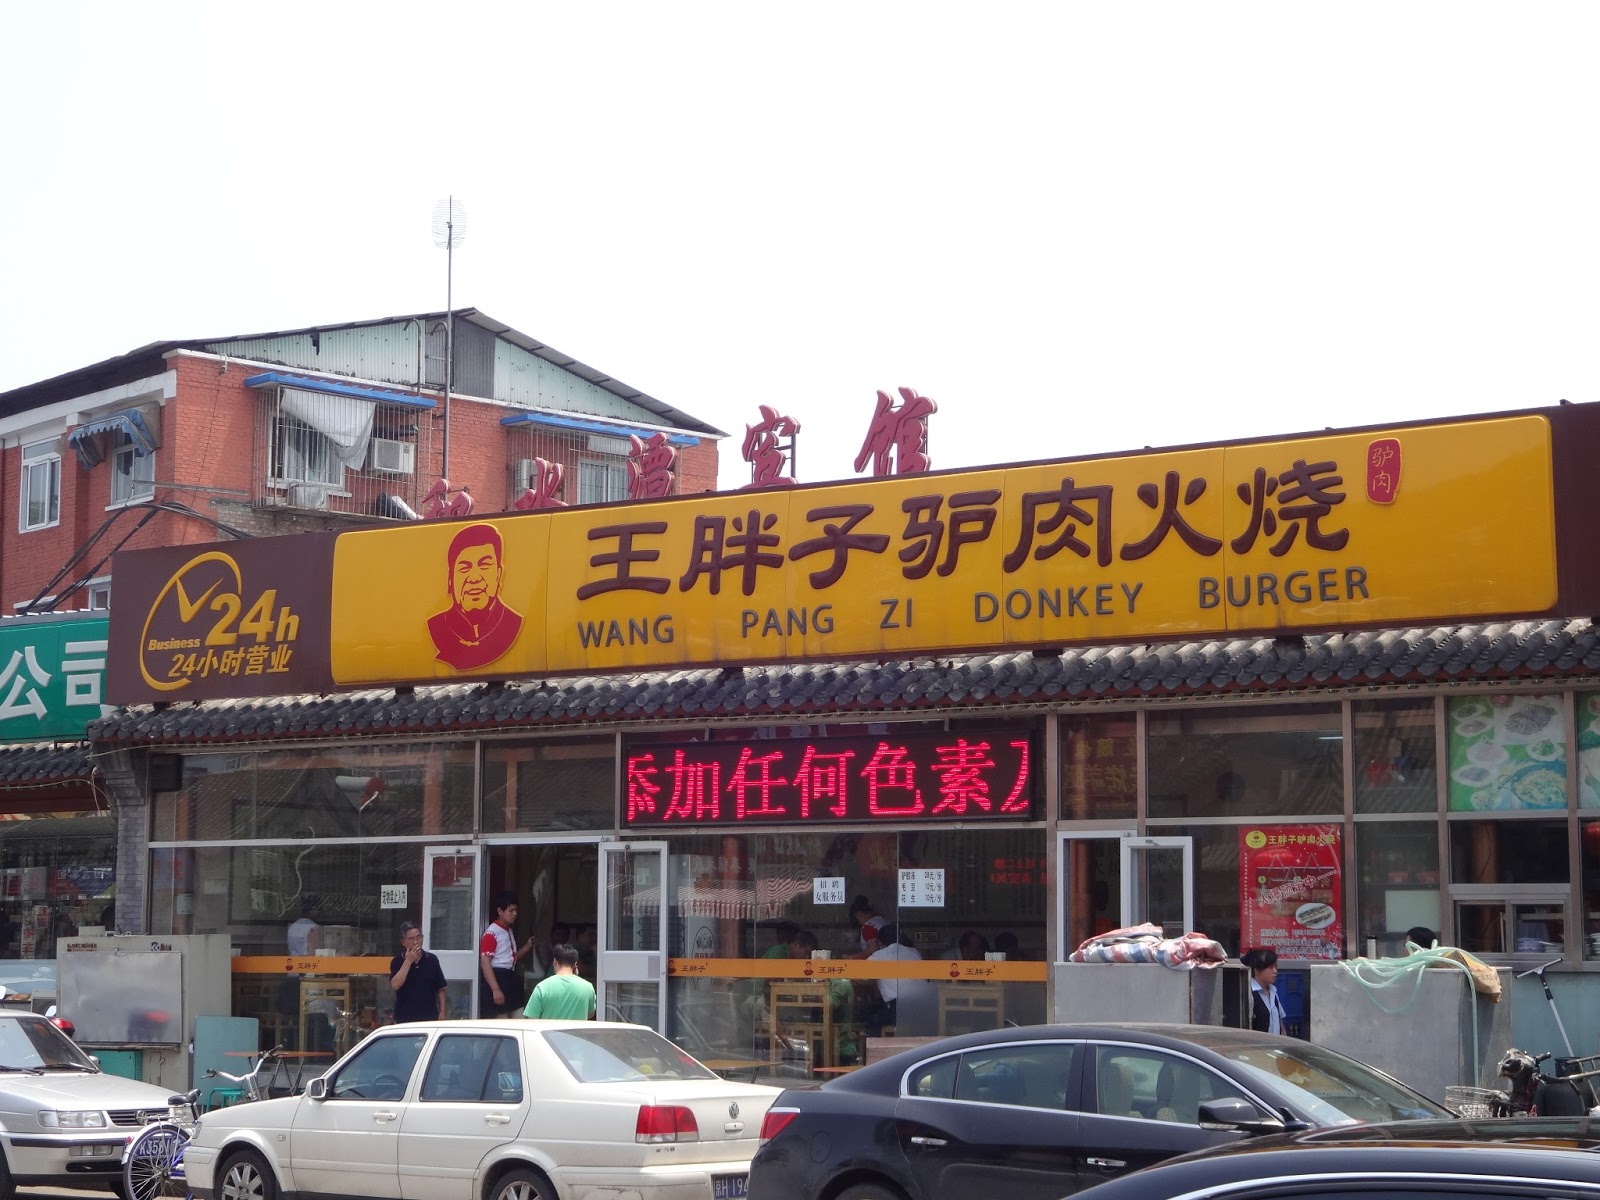 مطعم لحوم حمير فى بكين